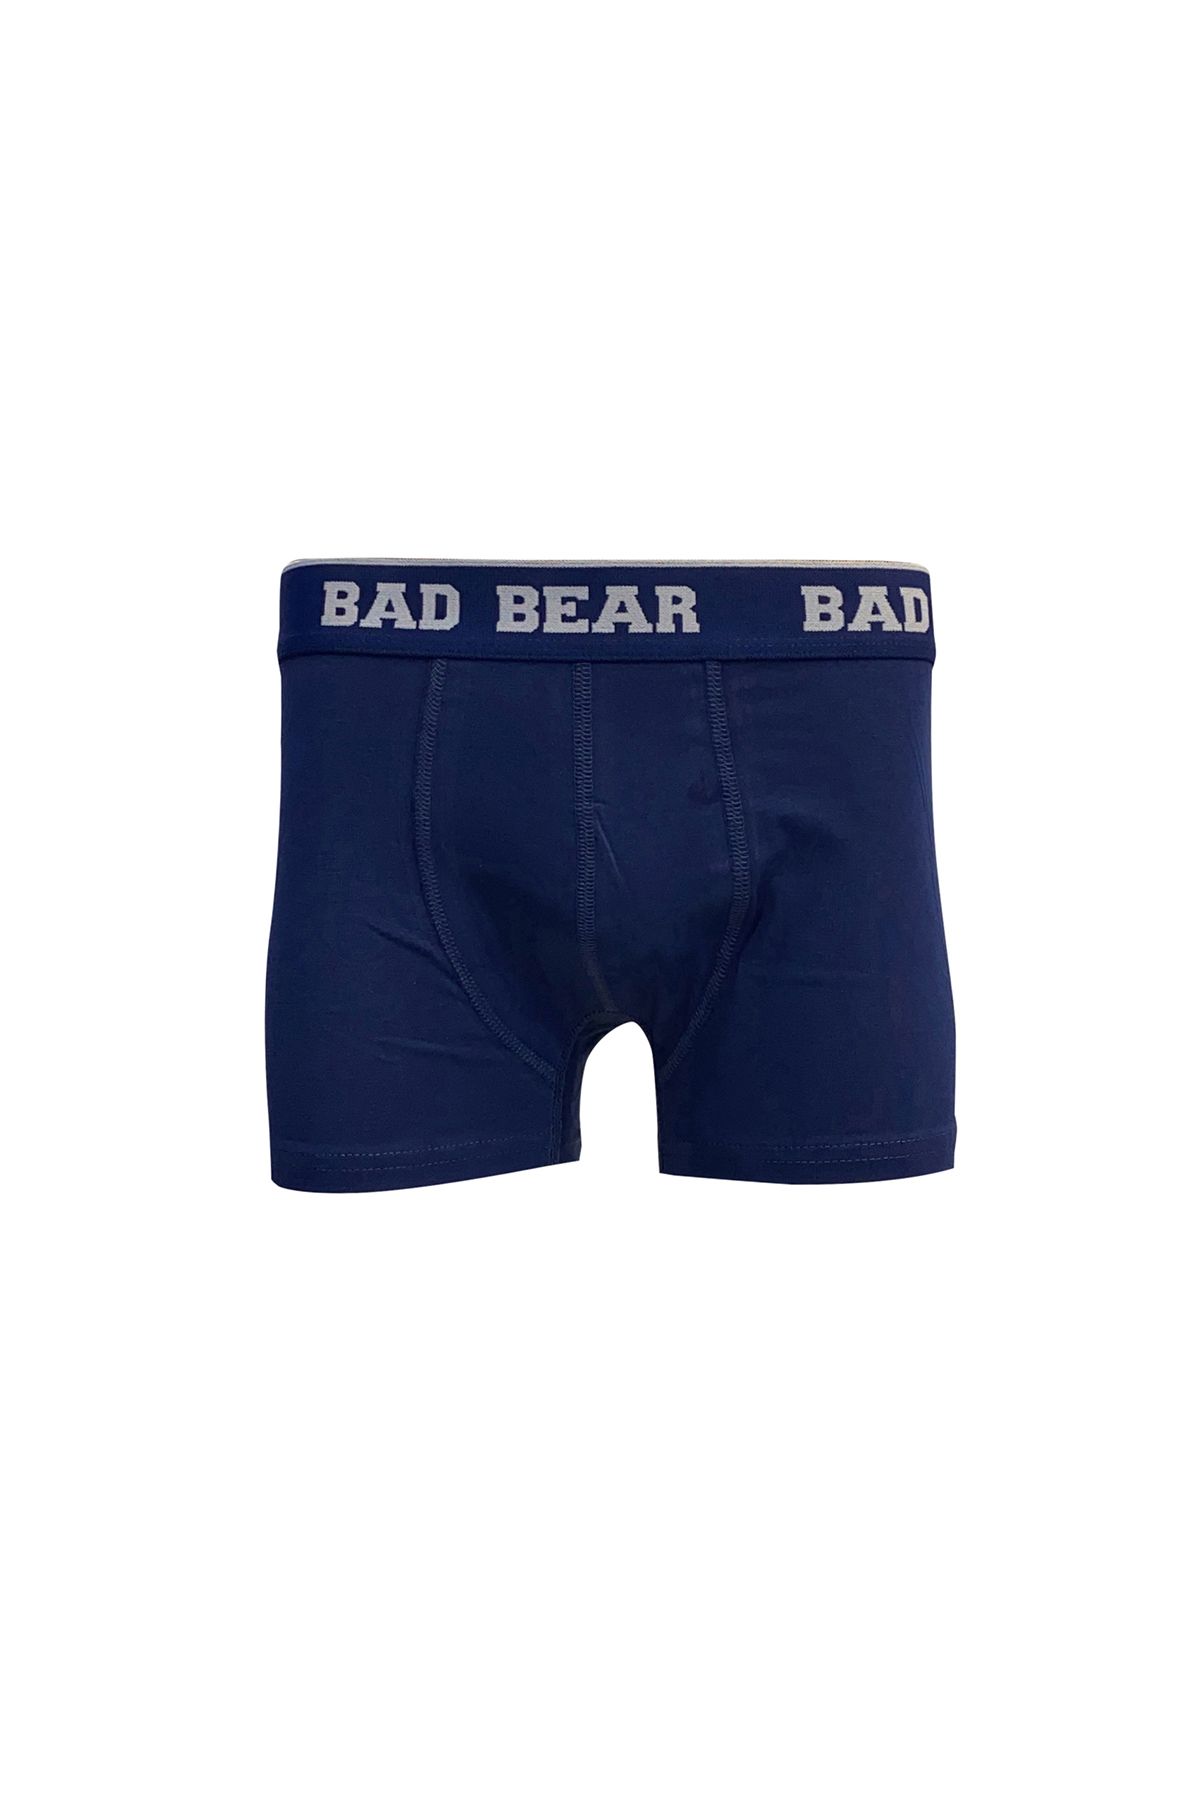 Bad Bear 21.01.03.002-c07 Basic Erkek Boxer